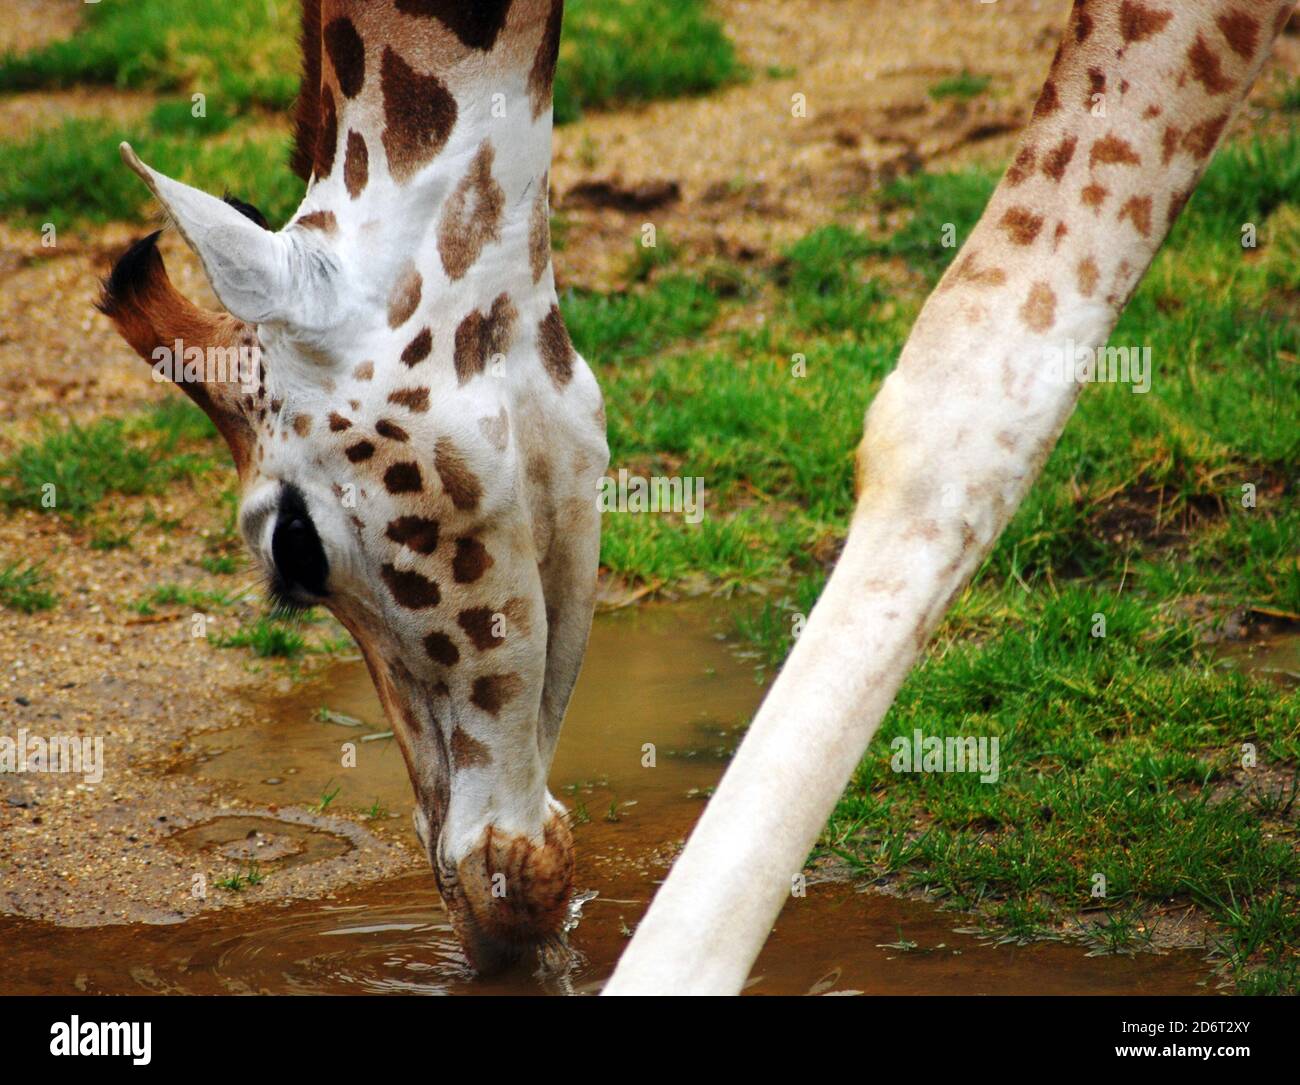 Giraffe du jeune Rothschild (Giraffa camelopardalis rothschild) gros plan de la tête et des jambes, eau potable l'une des espèces de sub-girafes les plus menacées Banque D'Images